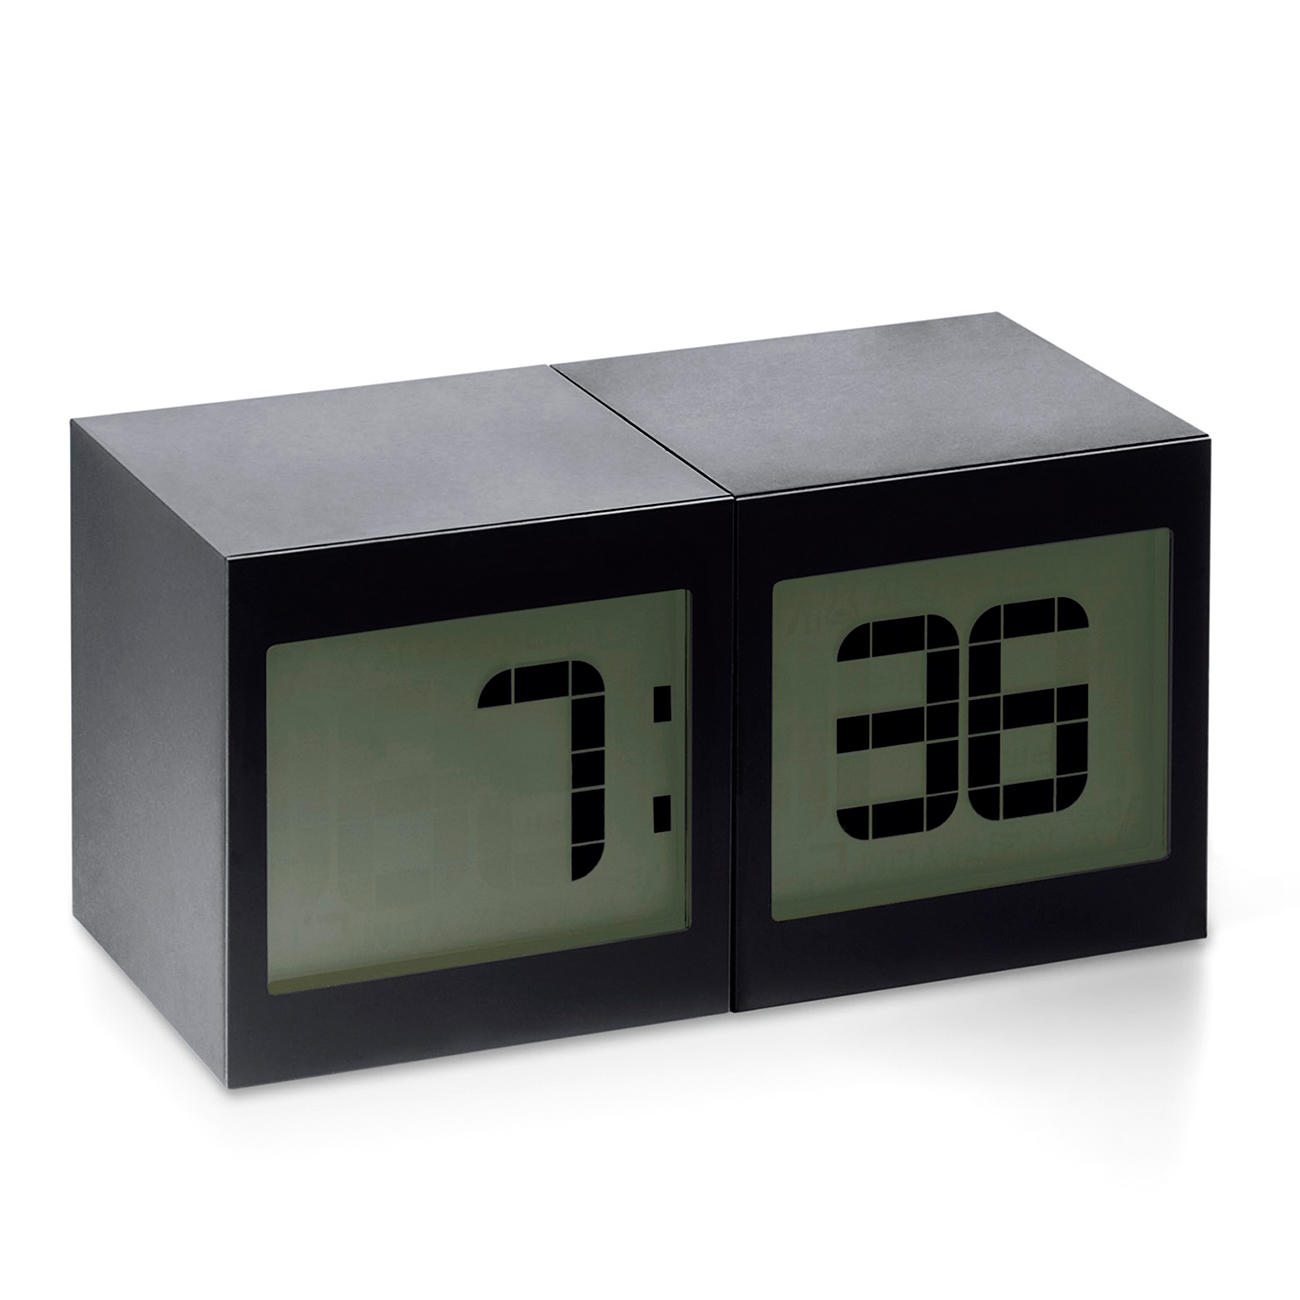 Magic Cube Clock | 3-year product guarantee1300 x 1300